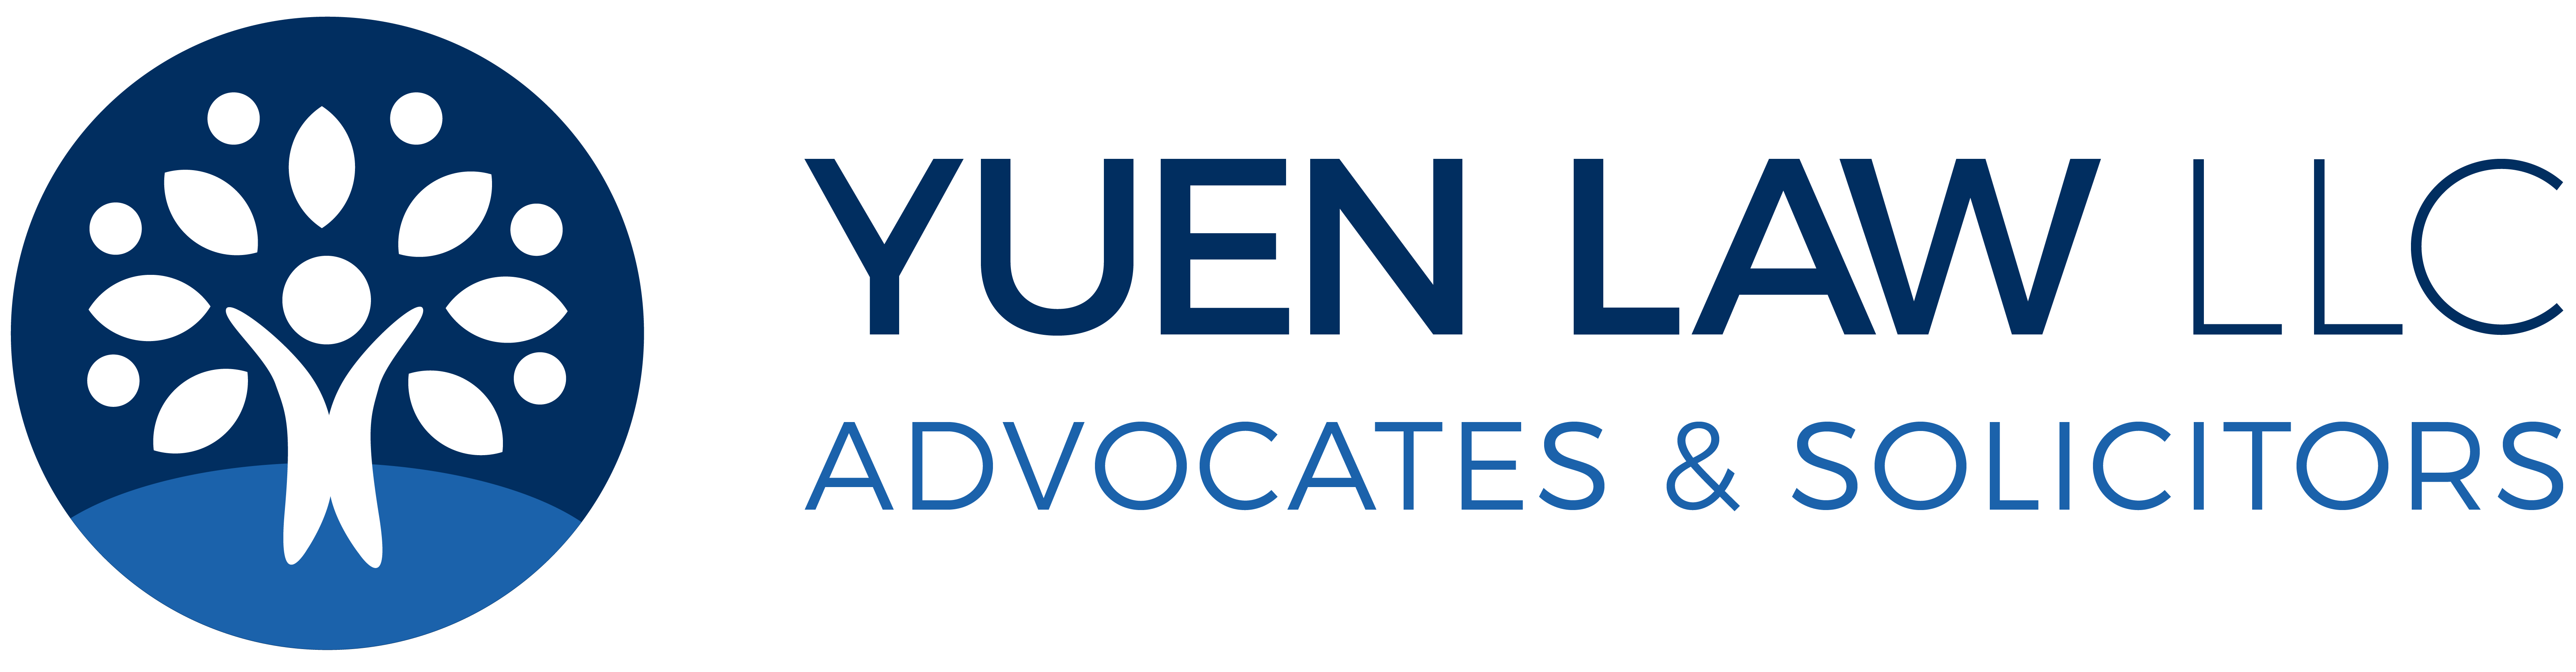 Yuen Law LLC